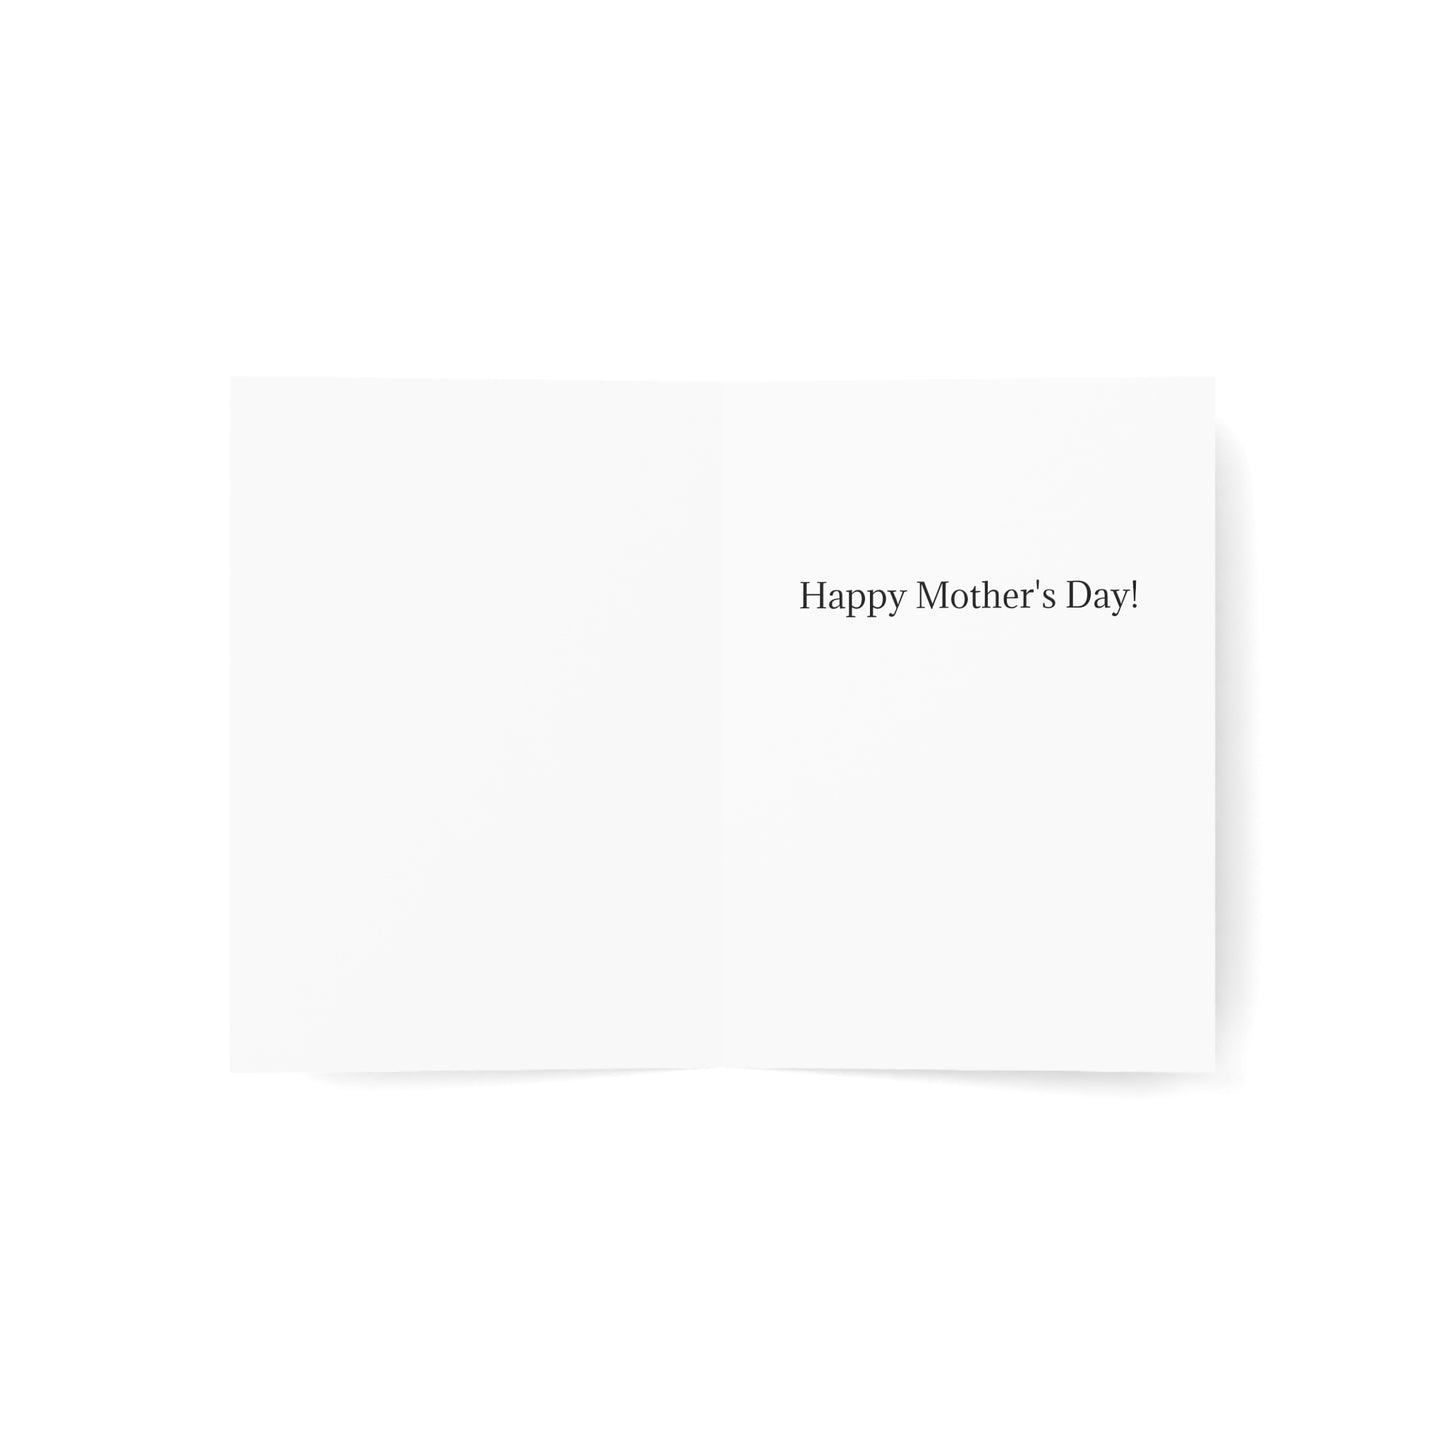 Adorable herrerillo con cresta "¡Hola, monada!" -Tarjetas de felicitación plegadas en el interior en blanco.